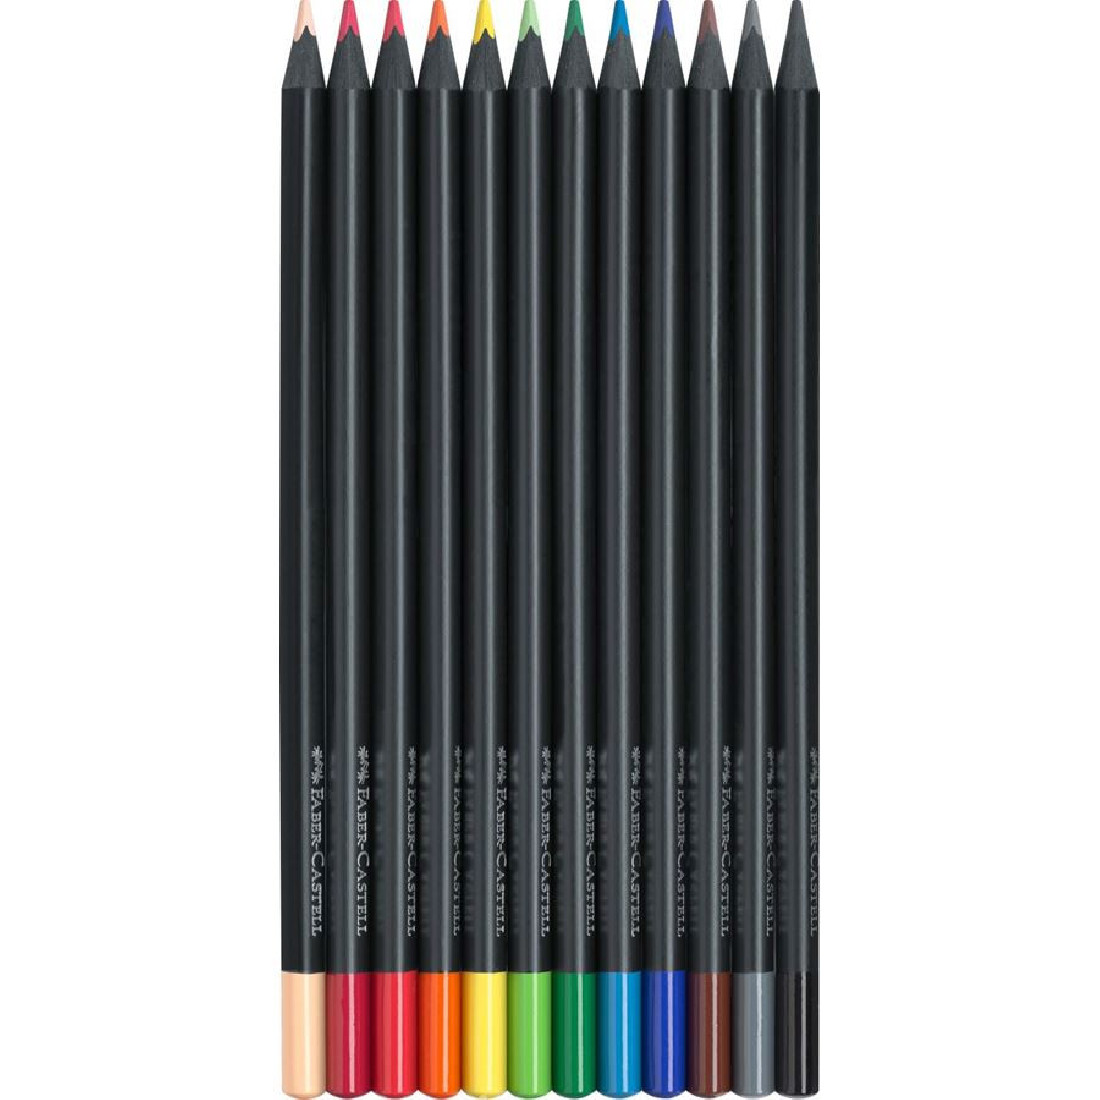 Faber-Castell Colour Pencils Black Edition 12pcs 116412